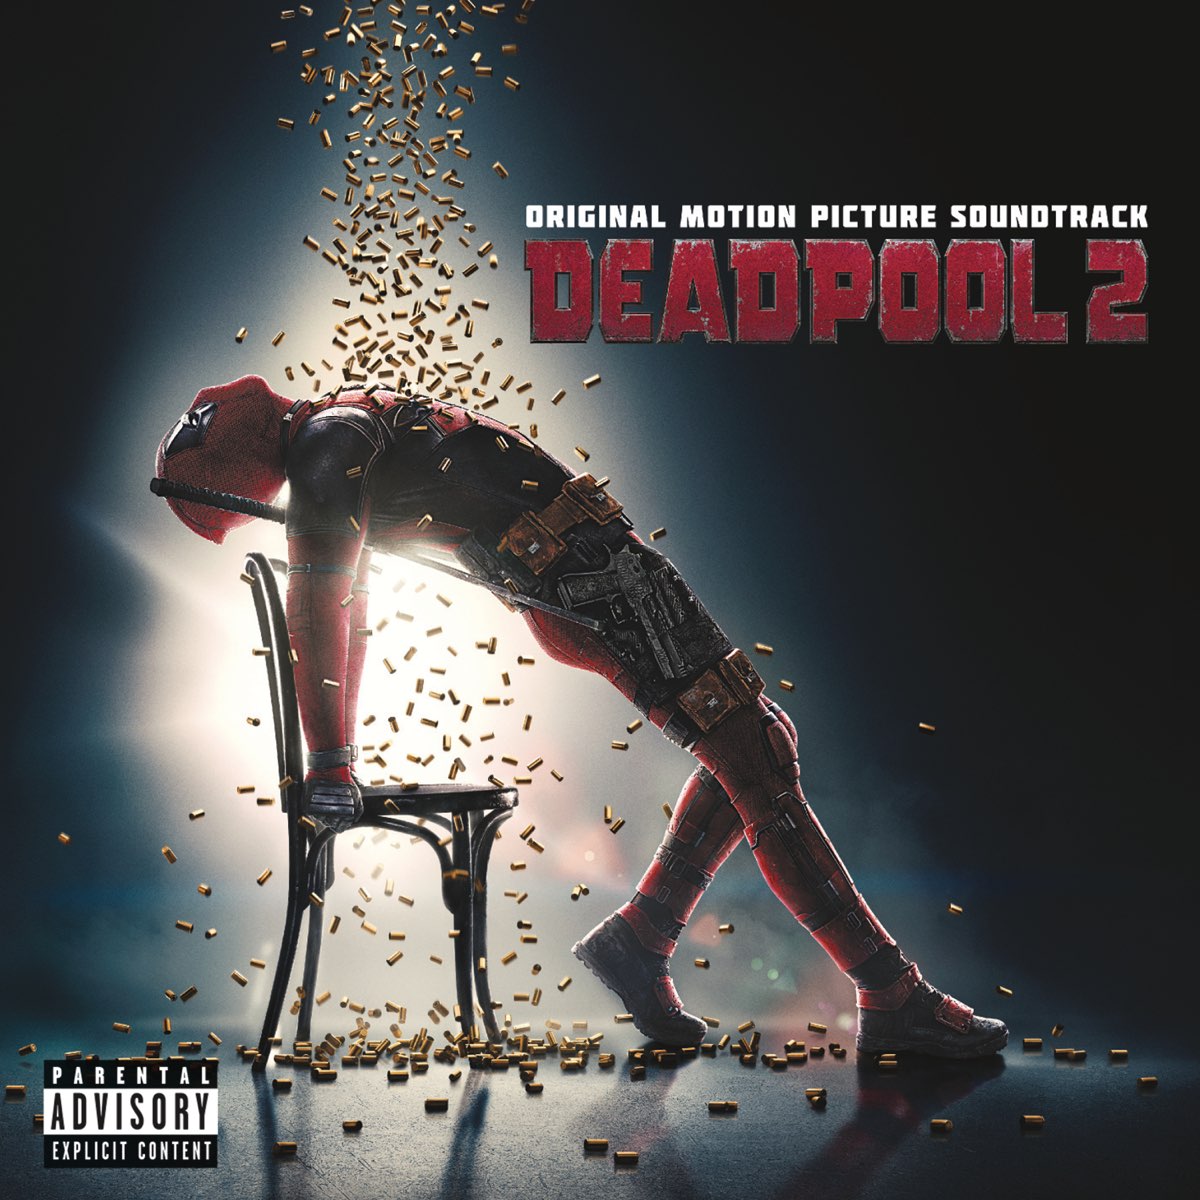 Deadpool 2 (Original Motion Picture Soundtrack) - Album by Various Artists  - Apple Music